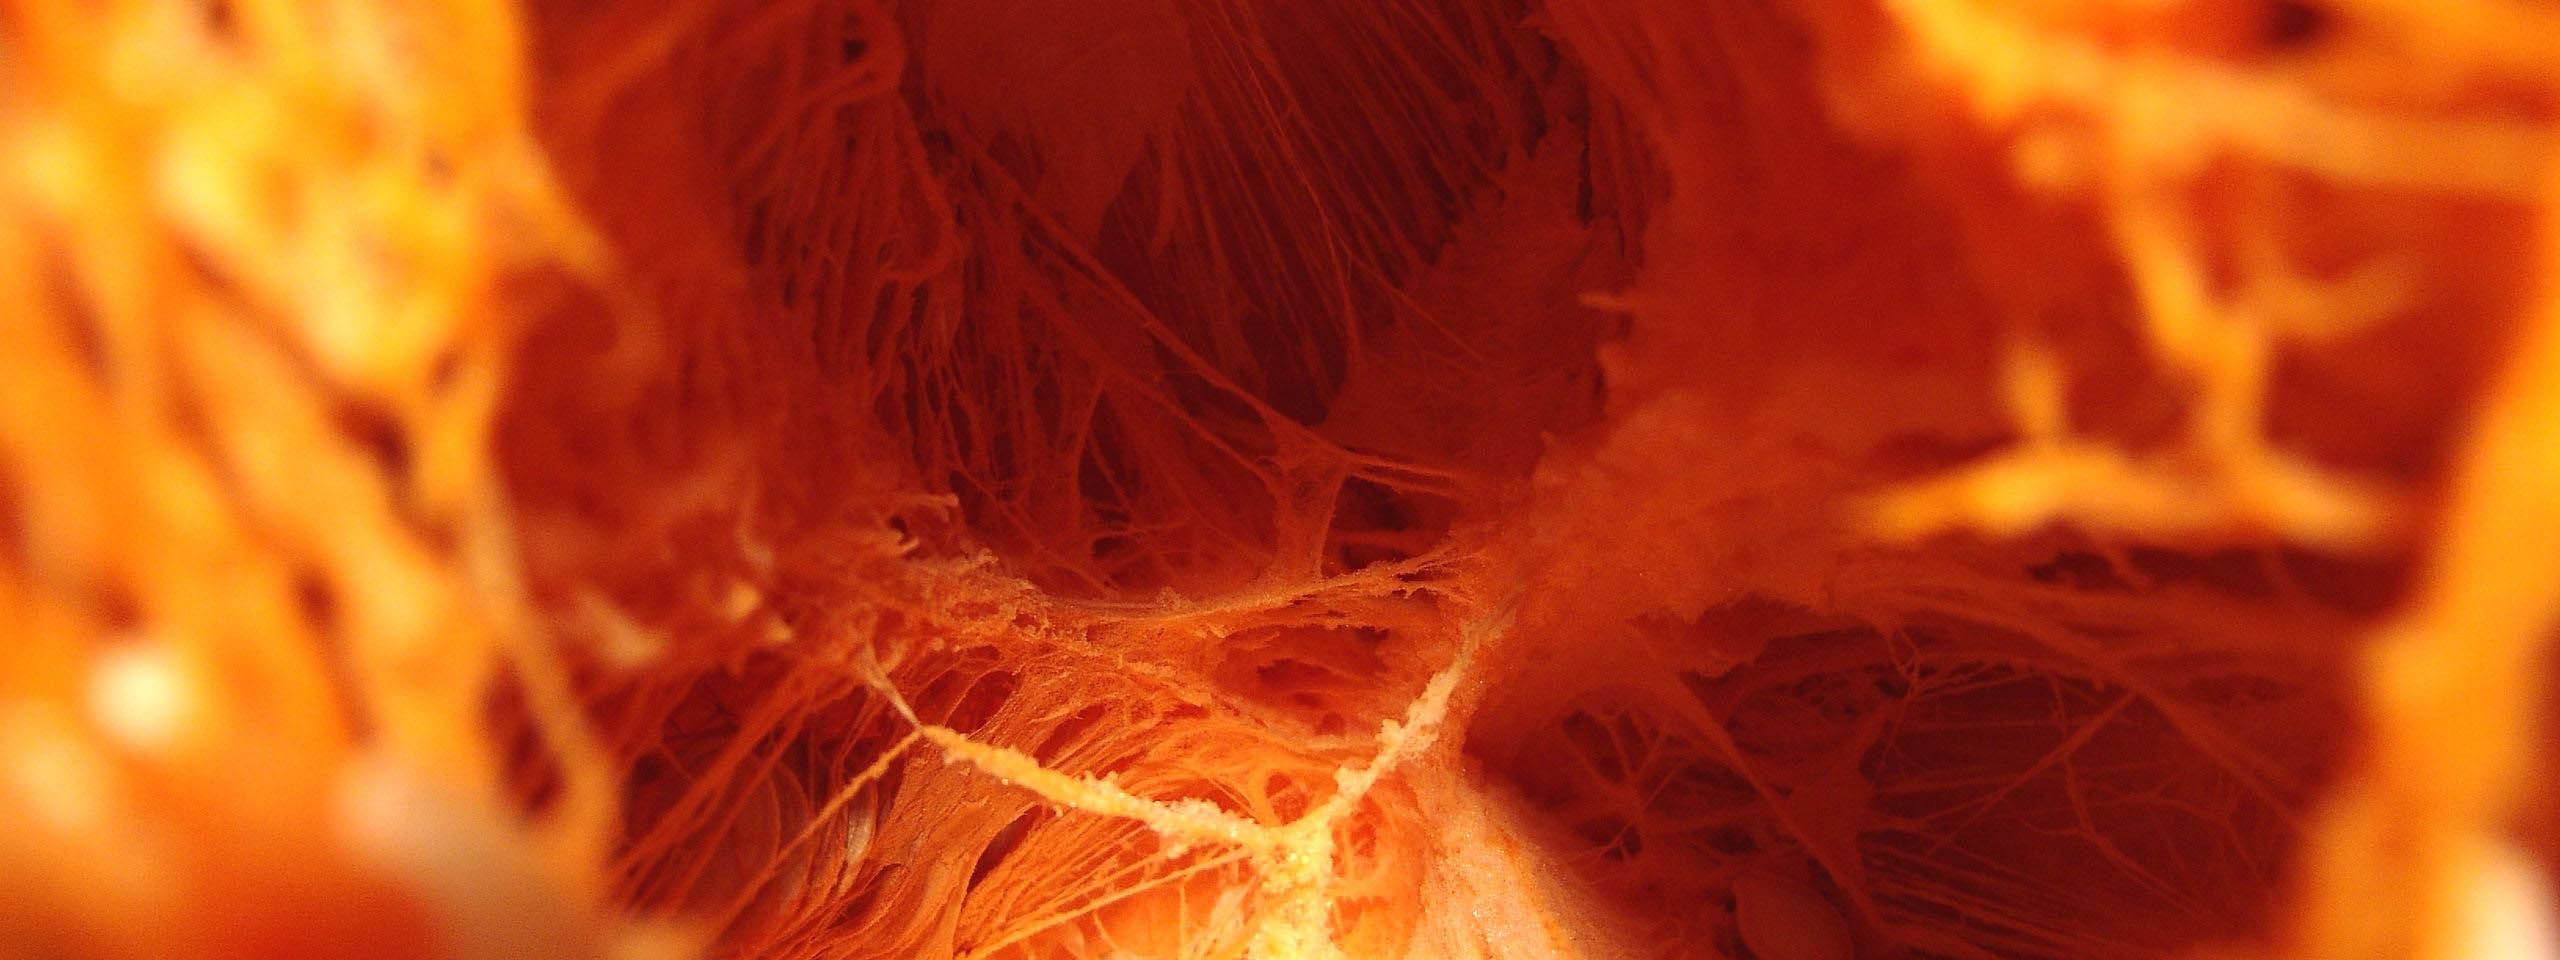 Inside The Pumpkin